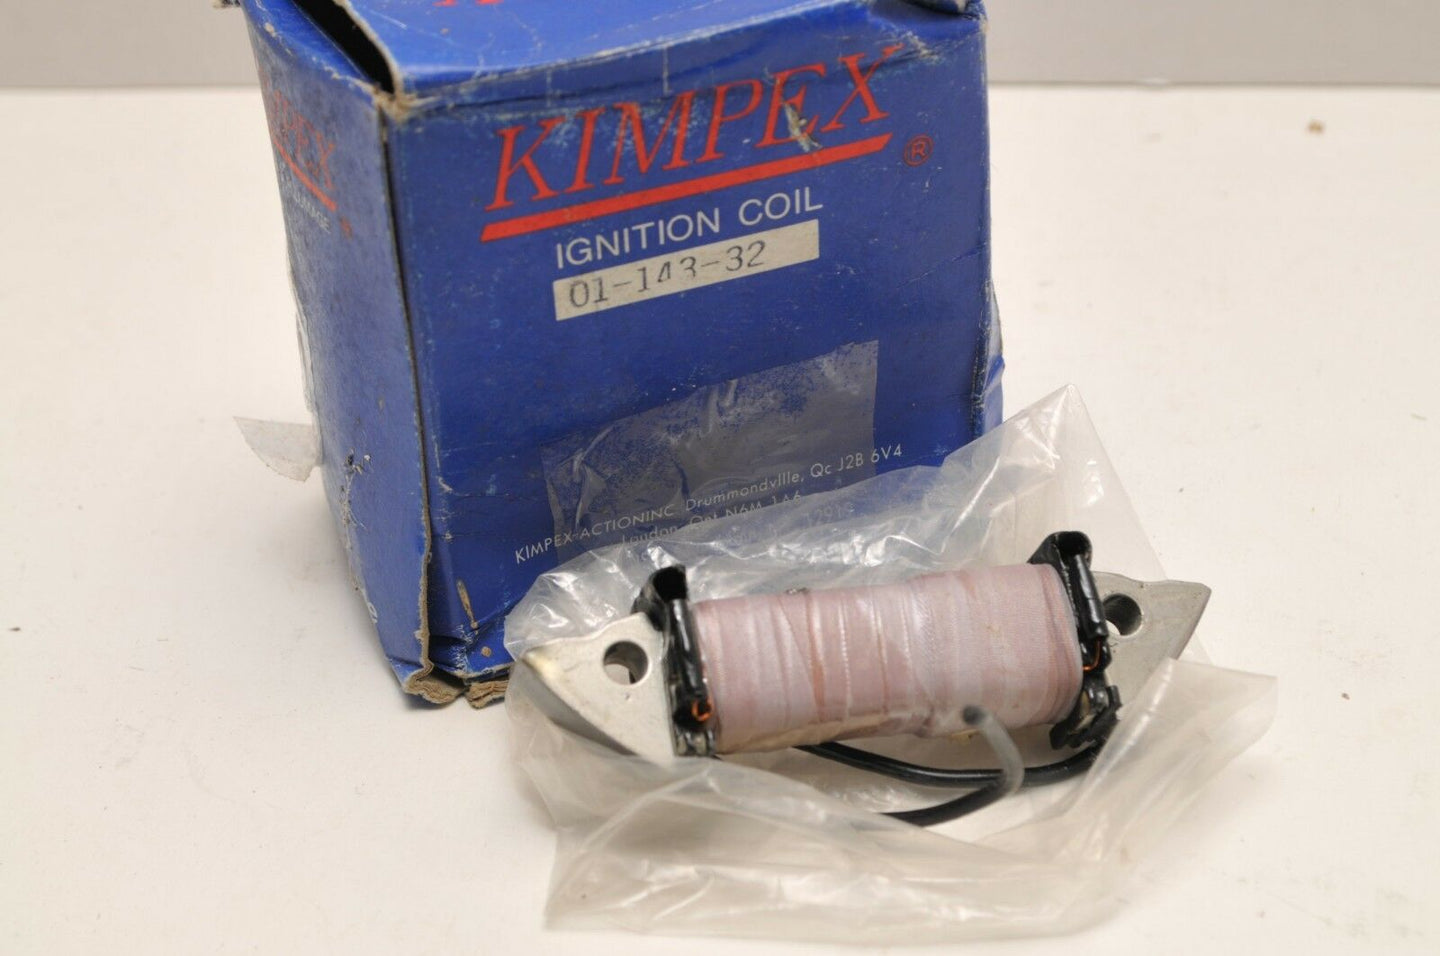 New Kimpex Ignition Coil intern 01-143-32 MOTO-SKI-DOO BOMBARDIER ALPINE 1975-82